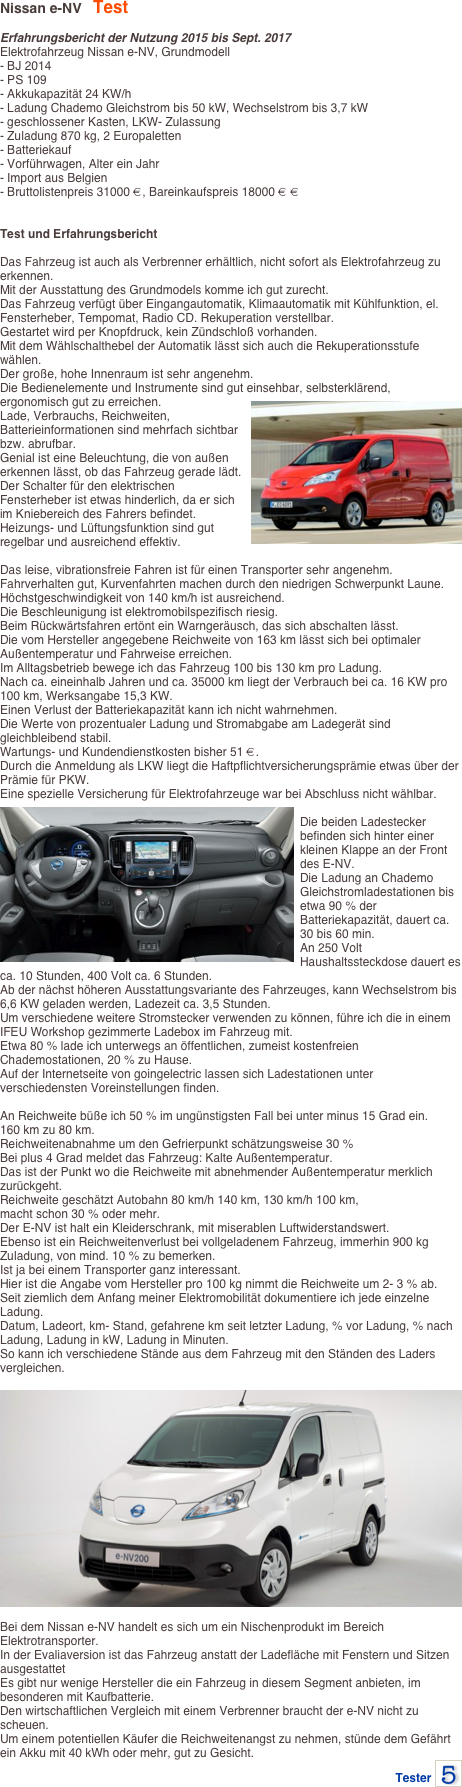 Nissan e-NV   Test

Erfahrungsbericht der Nutzung 2015 bis Sept. 2017
Elektrofahrzeug Nissan e-NV, Grundmodell- BJ 2014- PS 109- Akkukapazität 24 KW/h- Ladung Chademo Gleichstrom bis 50 kW, Wechselstrom bis 3,7 kW- geschlossener Kasten, LKW- Zulassung- Zuladung 870 kg, 2 Europaletten- Batteriekauf- Vorführwagen, Alter ein Jahr- Import aus Belgien- Bruttolistenpreis 31000 €, Bareinkaufspreis 18000 € €


Test und Erfahrungsbericht Das Fahrzeug ist auch als Verbrenner erhältlich, nicht sofort als Elektrofahrzeug zu erkennen.Mit der Ausstattung des Grundmodels komme ich gut zurecht.Das Fahrzeug verfügt über Eingangautomatik, Klimaautomatik mit Kühlfunktion, el. Fensterheber, Tempomat, Radio CD. Rekuperation verstellbar.Gestartet wird per Knopfdruck, kein Zündschloß vorhanden.Mit dem Wählschalthebel der Automatik lässt sich auch die Rekuperationsstufe wählen.Der große, hohe Innenraum ist sehr angenehm.Die Bedienelemente und Instrumente sind gut einsehbar, selbsterklärend, ergonomisch gut zu erreichen.￼Lade, Verbrauchs, Reichweiten, Batterieinformationen sind mehrfach sichtbar bzw. abrufbar.Genial ist eine Beleuchtung, die von außen erkennen lässt, ob das Fahrzeug gerade lädt.Der Schalter für den elektrischen Fensterheber ist etwas hinderlich, da er sich im Kniebereich des Fahrers befindet.Heizungs- und Lüftungsfunktion sind gut regelbar und ausreichend effektiv.  Das leise, vibrationsfreie Fahren ist für einen Transporter sehr angenehm.Fahrverhalten gut, Kurvenfahrten machen durch den niedrigen Schwerpunkt Laune.Höchstgeschwindigkeit von 140 km/h ist ausreichend.Die Beschleunigung ist elektromobilspezifisch riesig.Beim Rückwärtsfahren ertönt ein Warngeräusch, das sich abschalten lässt.Die vom Hersteller angegebene Reichweite von 163 km lässt sich bei optimaler Außentemperatur und Fahrweise erreichen.Im Alltagsbetrieb bewege ich das Fahrzeug 100 bis 130 km pro Ladung.Nach ca. eineinhalb Jahren und ca. 35000 km liegt der Verbrauch bei ca. 16 KW pro 100 km, Werksangabe 15,3 KW.Einen Verlust der Batteriekapazität kann ich nicht wahrnehmen.Die Werte von prozentualer Ladung und Stromabgabe am Ladegerät sind gleichbleibend stabil.Wartungs- und Kundendienstkosten bisher 51 €.Durch die Anmeldung als LKW liegt die Haftpflichtversicherungsprämie etwas über der Prämie für PKW.Eine spezielle Versicherung für Elektrofahrzeuge war bei Abschluss nicht wählbar. ￼Die beiden Ladestecker befinden sich hinter einer kleinen Klappe an der Front des E-NV.Die Ladung an Chademo Gleichstromladestationen bis etwa 90 % der Batteriekapazität, dauert ca. 30 bis 60 min.An 250 Volt Haushaltssteckdose dauert es ca. 10 Stunden, 400 Volt ca. 6 Stunden.Ab der nächst höheren Ausstattungsvariante des Fahrzeuges, kann Wechselstrom bis 6,6 KW geladen werden, Ladezeit ca. 3,5 Stunden.Um verschiedene weitere Stromstecker verwenden zu können, führe ich die in einem IFEU Workshop gezimmerte Ladebox im Fahrzeug mit.Etwa 80 % lade ich unterwegs an öffentlichen, zumeist kostenfreien Chademostationen, 20 % zu Hause.Auf der Internetseite von goingelectric lassen sich Ladestationen unter verschiedensten Voreinstellungen finden.

An Reichweite büße ich 50 % im ungünstigsten Fall bei unter minus 15 Grad ein.
160 km zu 80 km.Reichweitenabnahme um den Gefrierpunkt schätzungsweise 30 %Bei plus 4 Grad meldet das Fahrzeug: Kalte Außentemperatur.Das ist der Punkt wo die Reichweite mit abnehmender Außentemperatur merklich zurückgeht.Reichweite geschätzt Autobahn 80 km/h 140 km, 130 km/h 100 km,
macht schon 30 % oder mehr.Der E-NV ist halt ein Kleiderschrank, mit miserablen Luftwiderstandswert.Ebenso ist ein Reichweitenverlust bei vollgeladenem Fahrzeug, immerhin 900 kg Zuladung, von mind. 10 % zu bemerken.Ist ja bei einem Transporter ganz interessant.Hier ist die Angabe vom Hersteller pro 100 kg nimmt die Reichweite um 2- 3 % ab.Seit ziemlich dem Anfang meiner Elektromobilität dokumentiere ich jede einzelne Ladung.Datum, Ladeort, km- Stand, gefahrene km seit letzter Ladung, % vor Ladung, % nach Ladung, Ladung in kW, Ladung in Minuten.So kann ich verschiedene Stände aus dem Fahrzeug mit den Ständen des Laders vergleichen. ￼
Bei dem Nissan e-NV handelt es sich um ein Nischenprodukt im Bereich Elektrotransporter.In der Evaliaversion ist das Fahrzeug anstatt der Ladefläche mit Fenstern und Sitzen ausgestattetEs gibt nur wenige Hersteller die ein Fahrzeug in diesem Segment anbieten, im besonderen mit Kaufbatterie.Den wirtschaftlichen Vergleich mit einem Verbrenner braucht der e-NV nicht zu scheuen.Um einem potentiellen Käufer die Reichweitenangst zu nehmen, stünde dem Gefährt ein Akku mit 40 kWh oder mehr, gut zu Gesicht.
Tester ￼